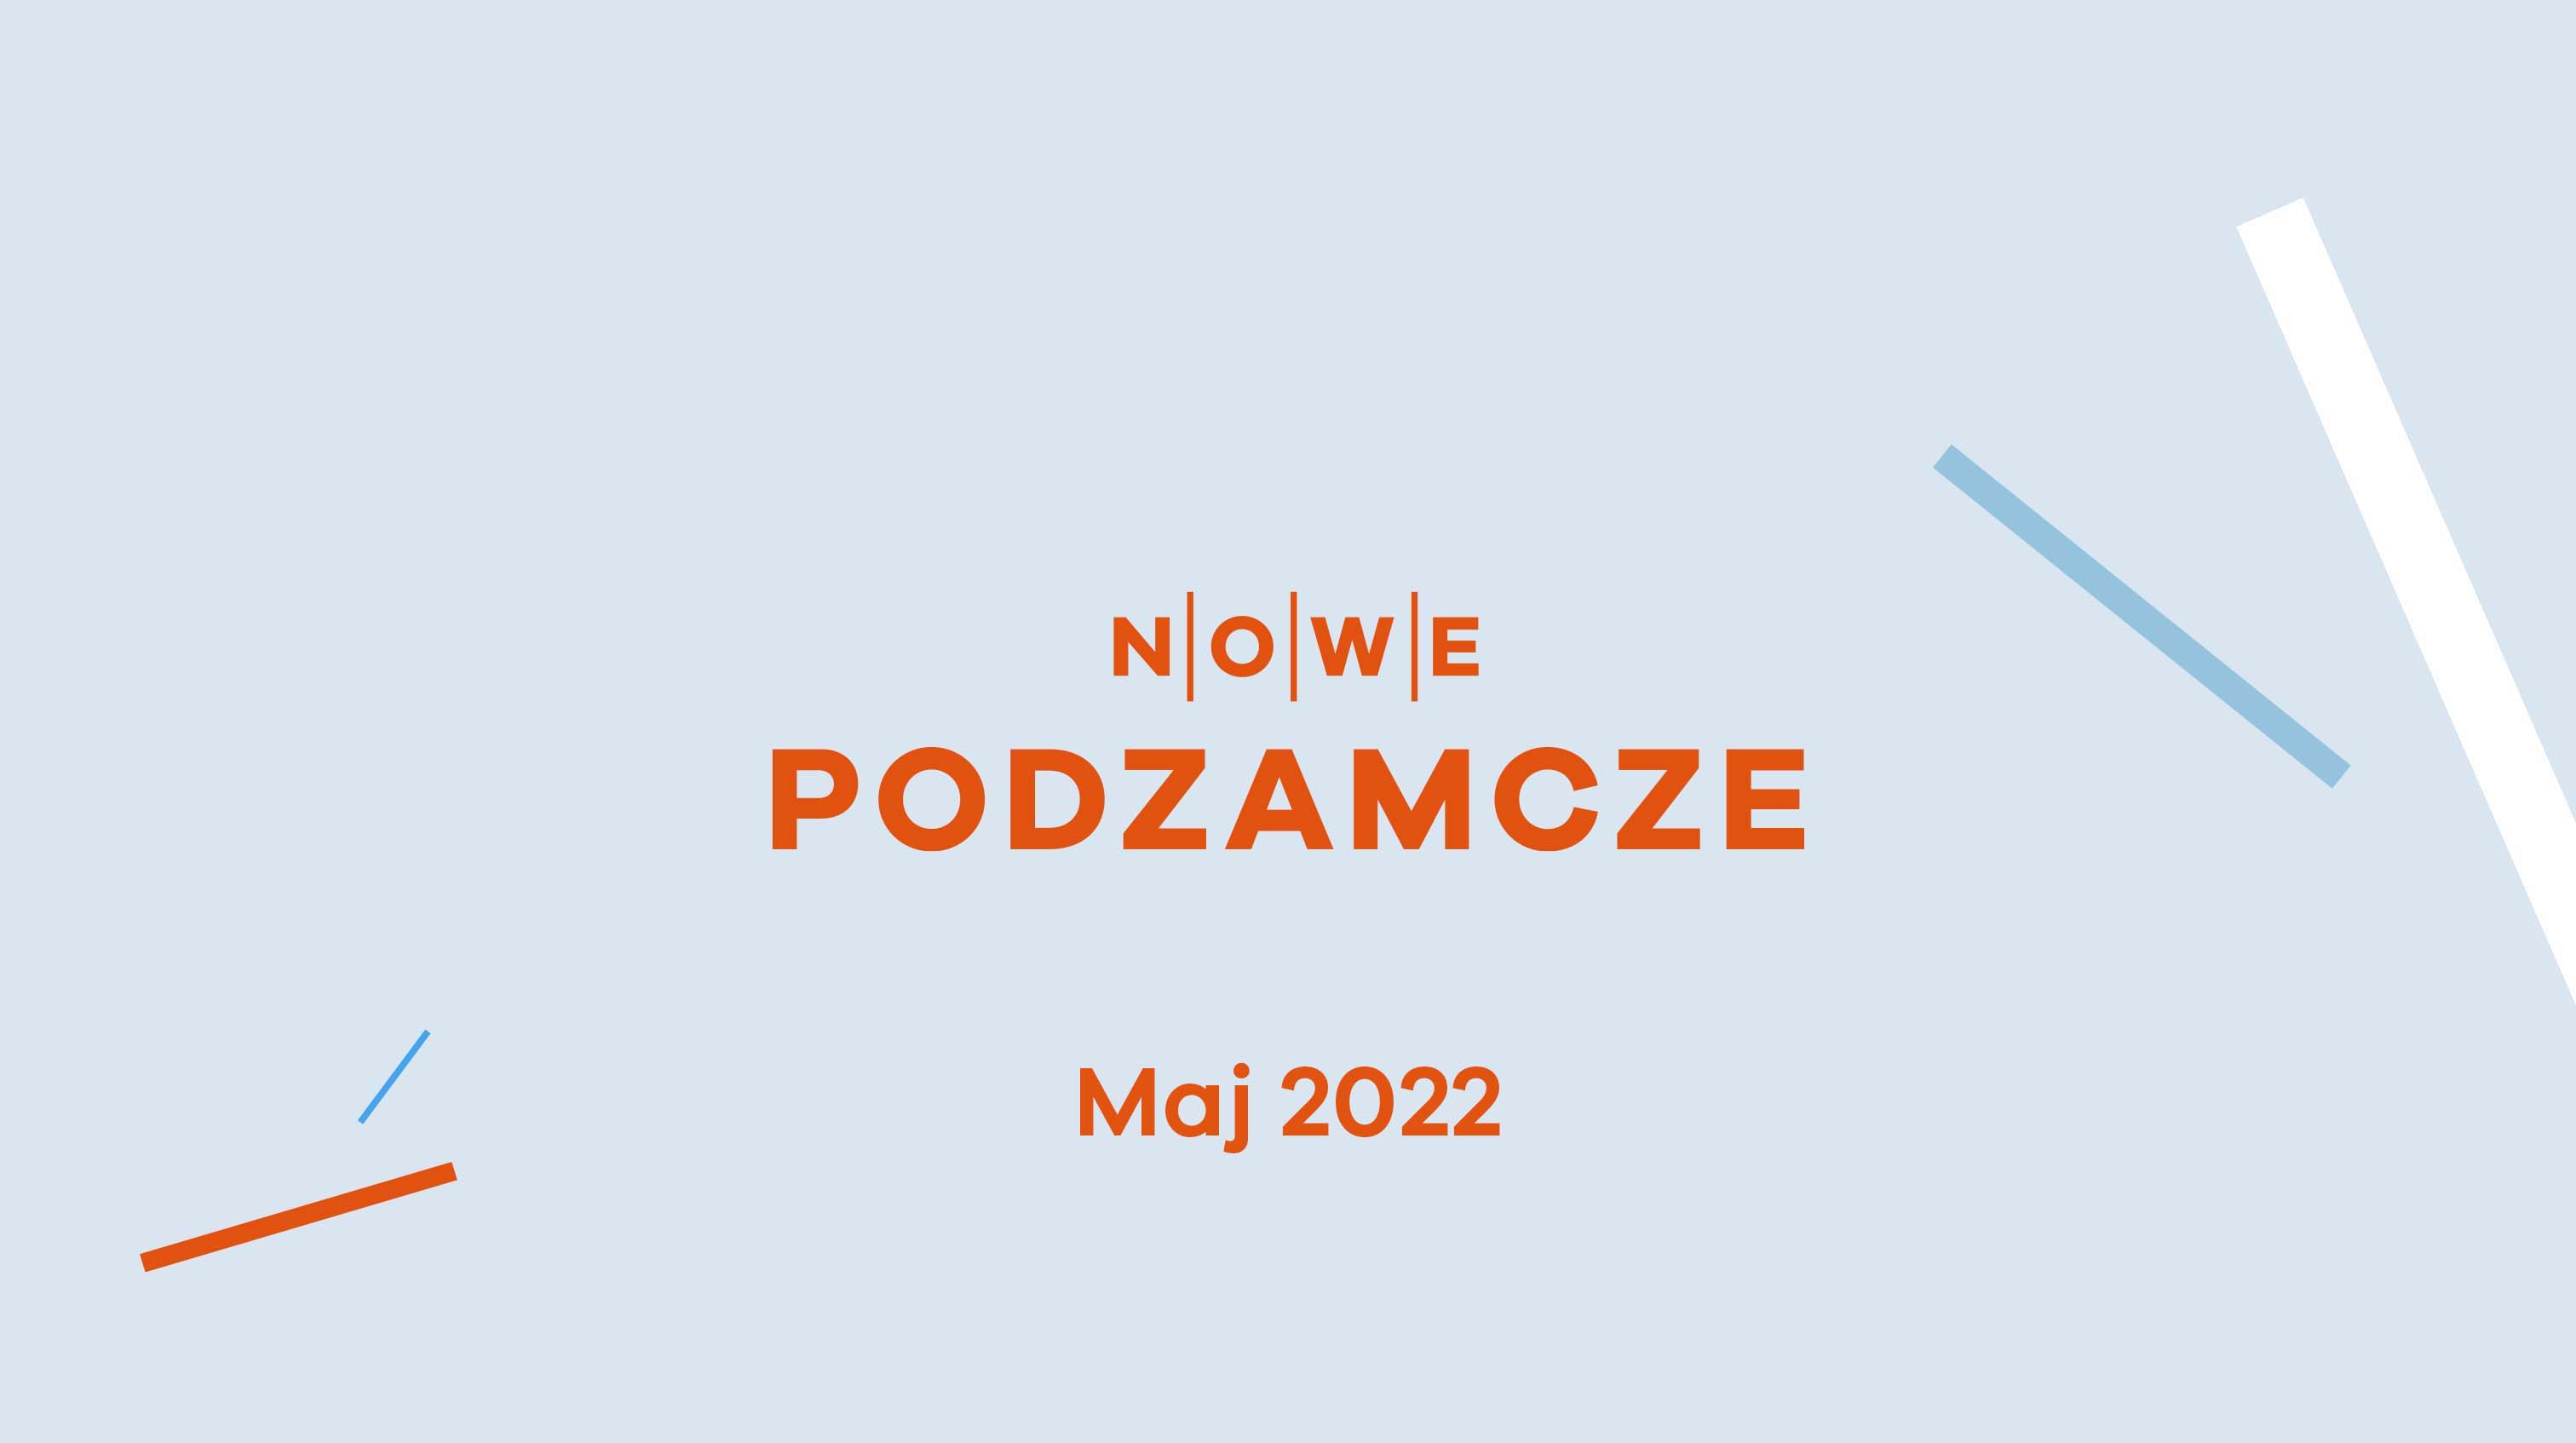 Nowe Podzamcze, Dziennik budowy - Nowe Podzamcze w Wałbrzychu - marzec 2022